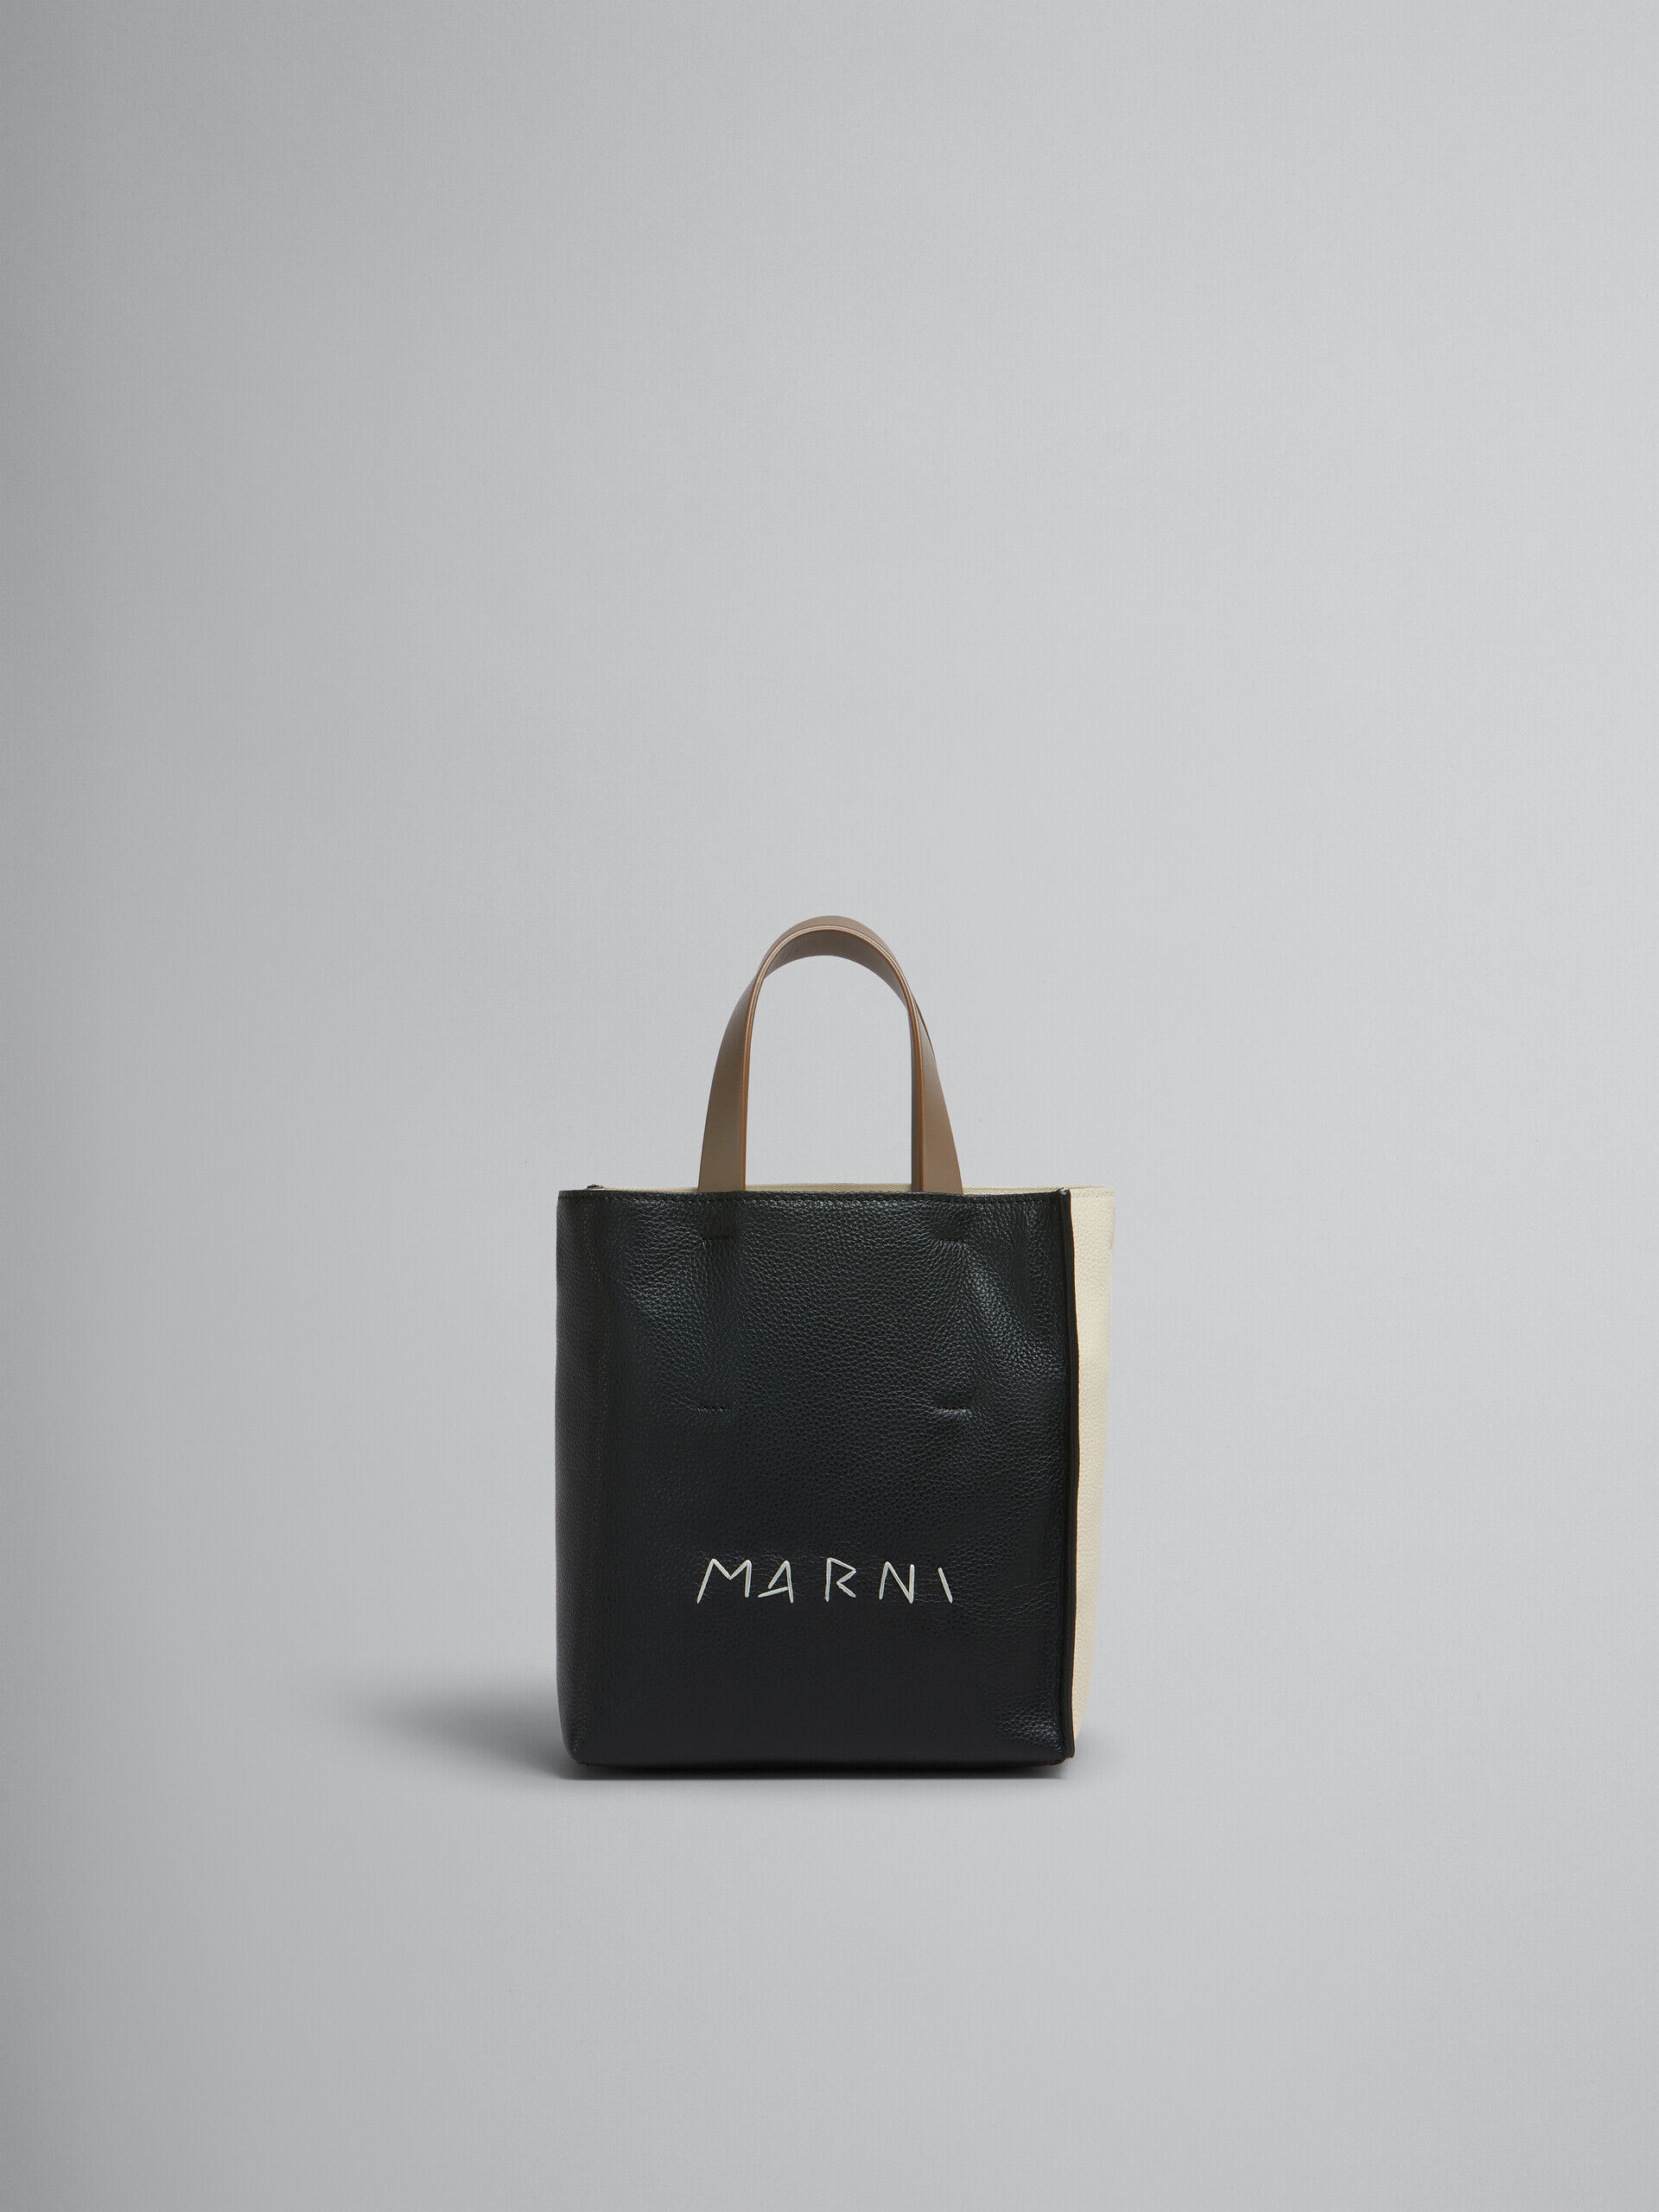 ブラック クリーム ブラウン レザー製 Museo Soft ミニバッグ、マルニメンディング | Marni